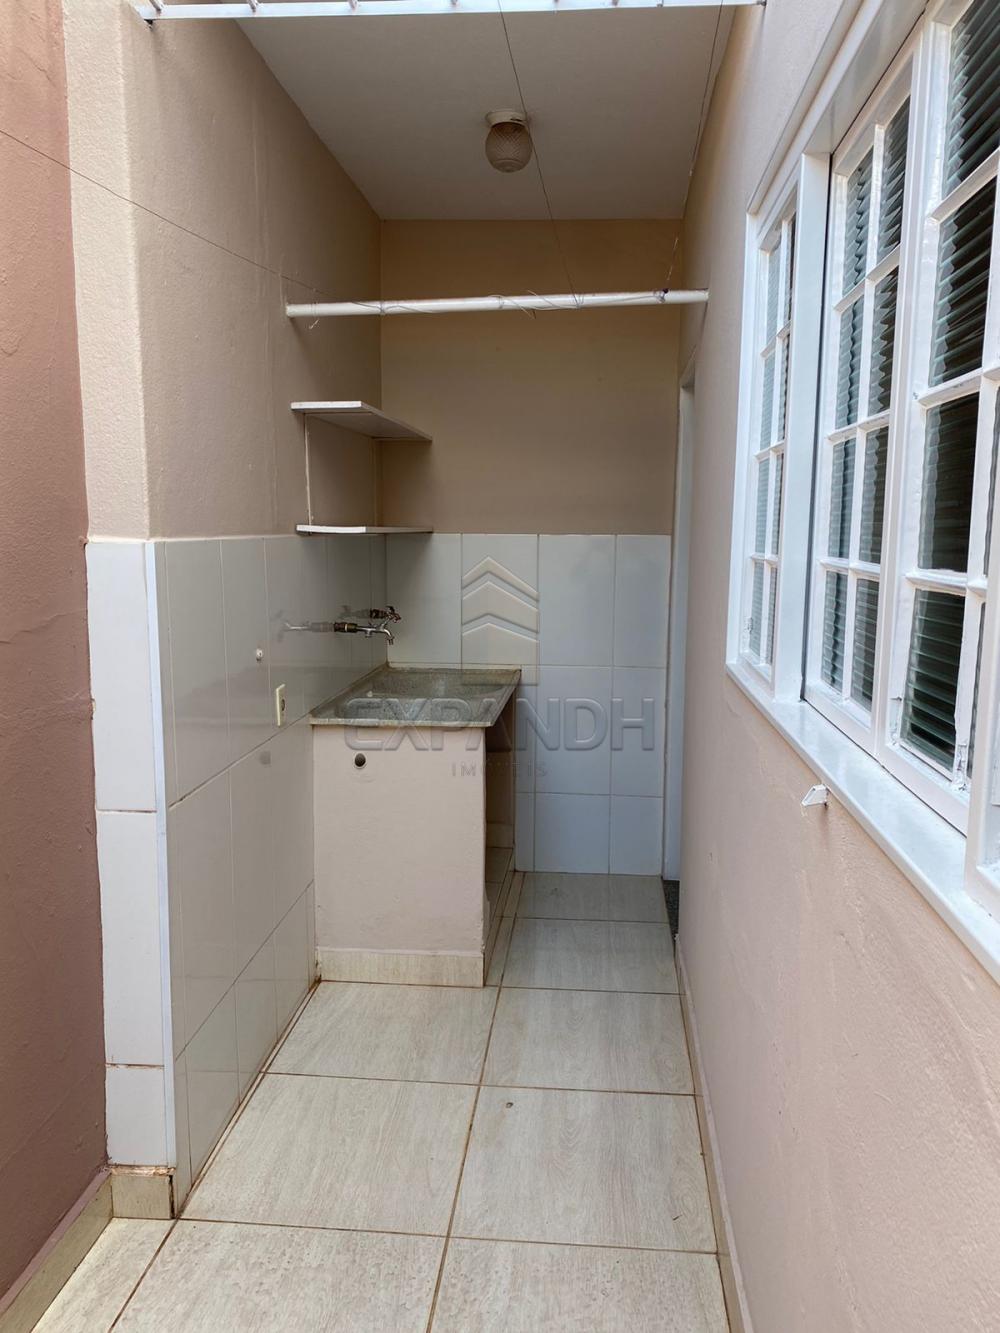 Alugar Casas / Padrão em Sertãozinho R$ 1.400,00 - Foto 23